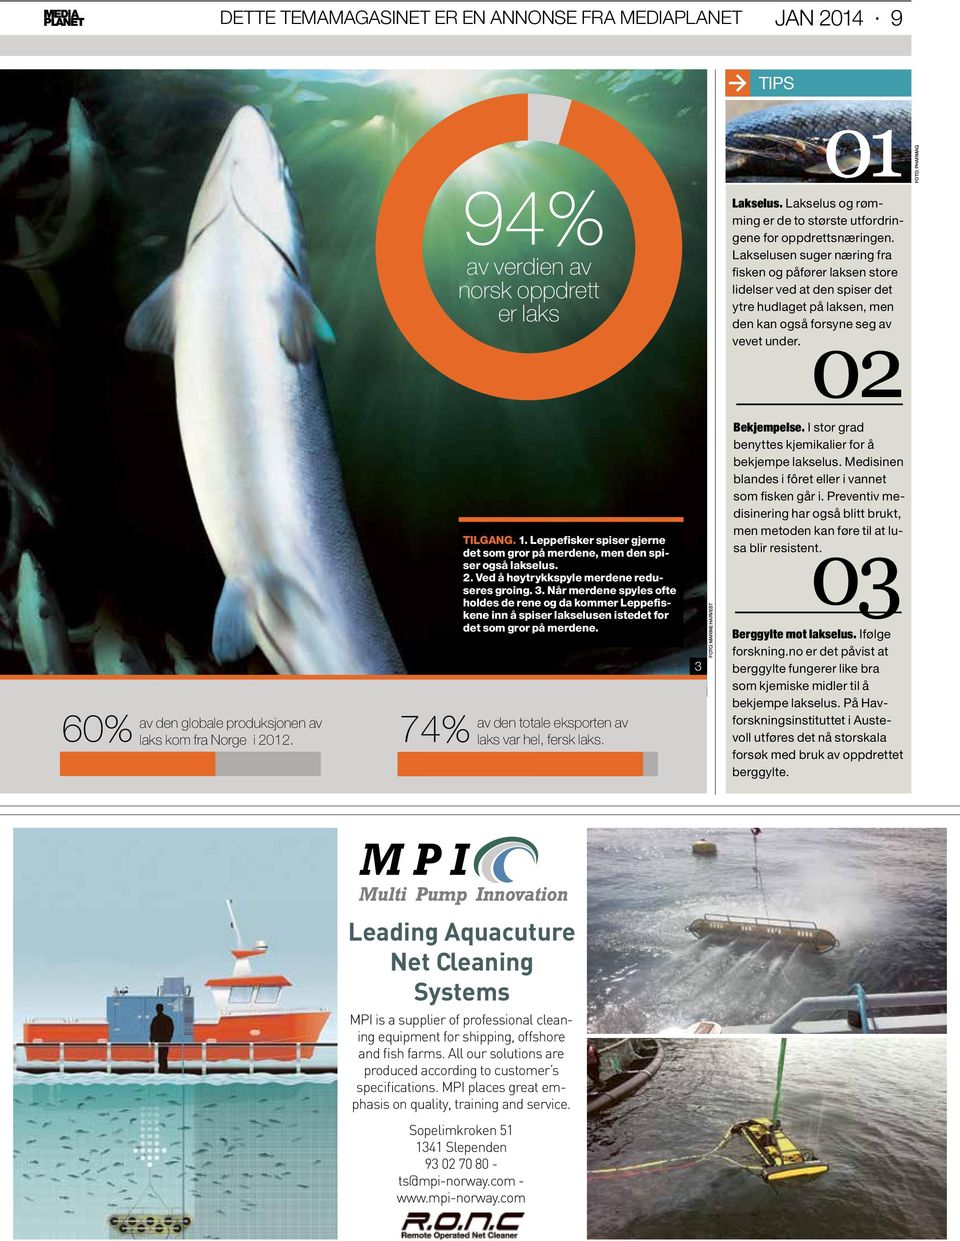 02 Foto: Pharmaq 60% av den globale produksjonen av laks kom fra Norge i 2012. 74% TILGANG. 1. Leppefisker spiser gjerne det som gror på merdene, men den spiser også lakselus. 2. Ved å høytrykkspyle merdene reduseres groing.